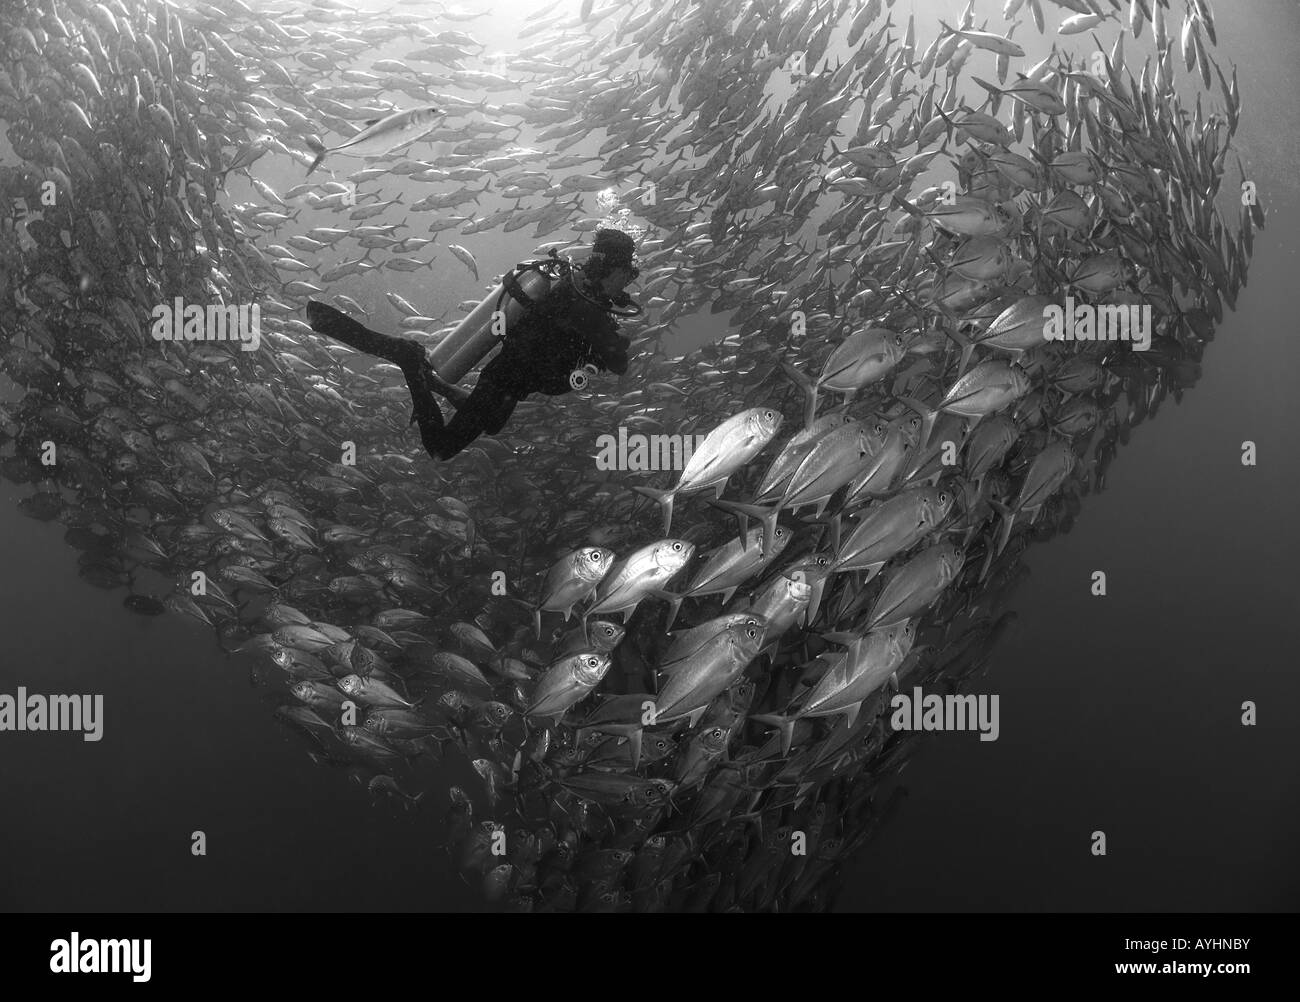 Un plongeur et une école de horse eye jacks Caranx sexfasciatus sur l'épave de l'USS Liberty Océan Pacifique l'Indonésie Bali Tulamben Banque D'Images